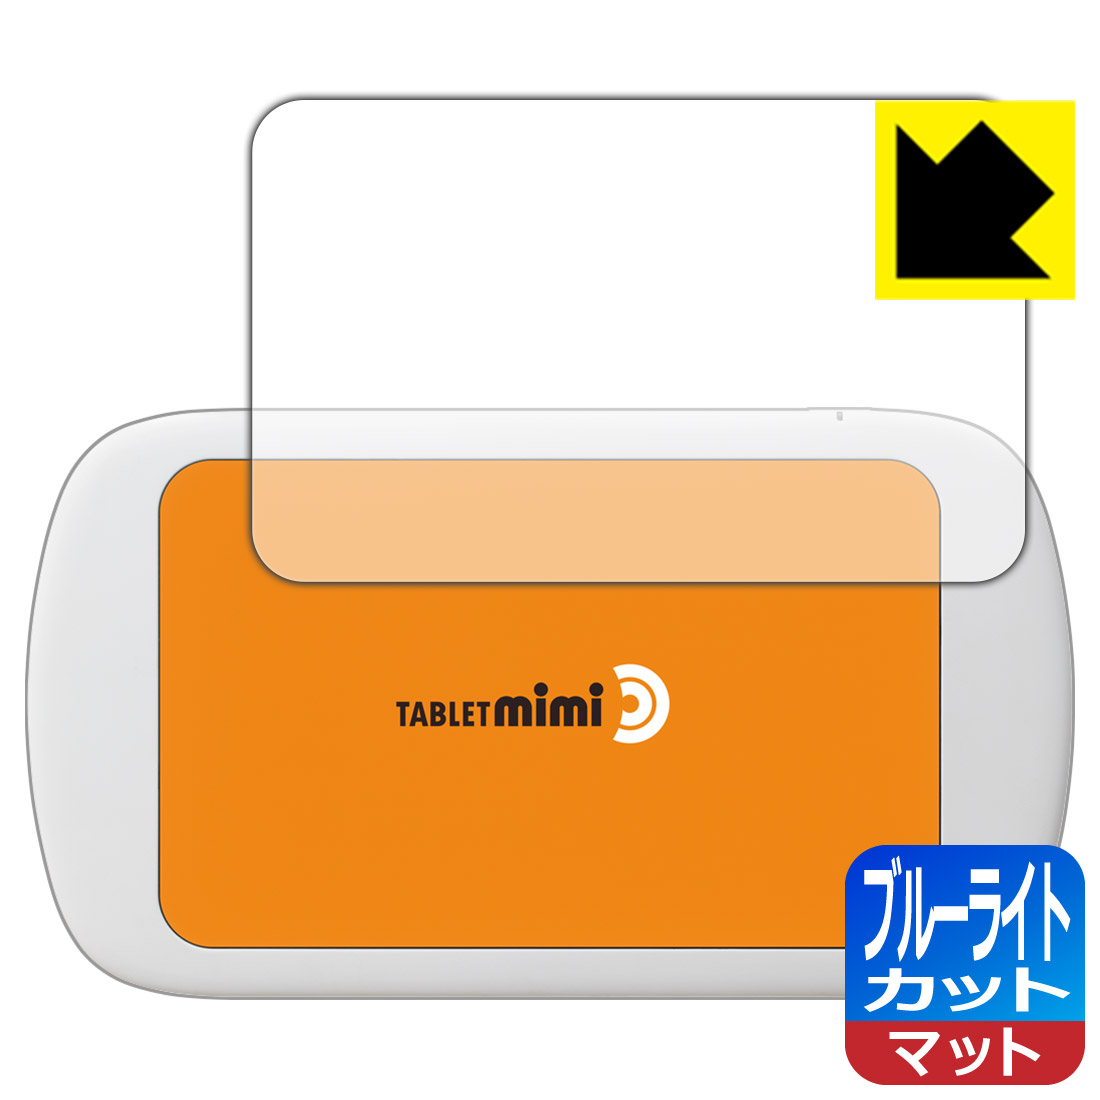 ブルーライトカット保護フィルム Tablet mimi (タブレット ミミ) 日本製 自社製造直販